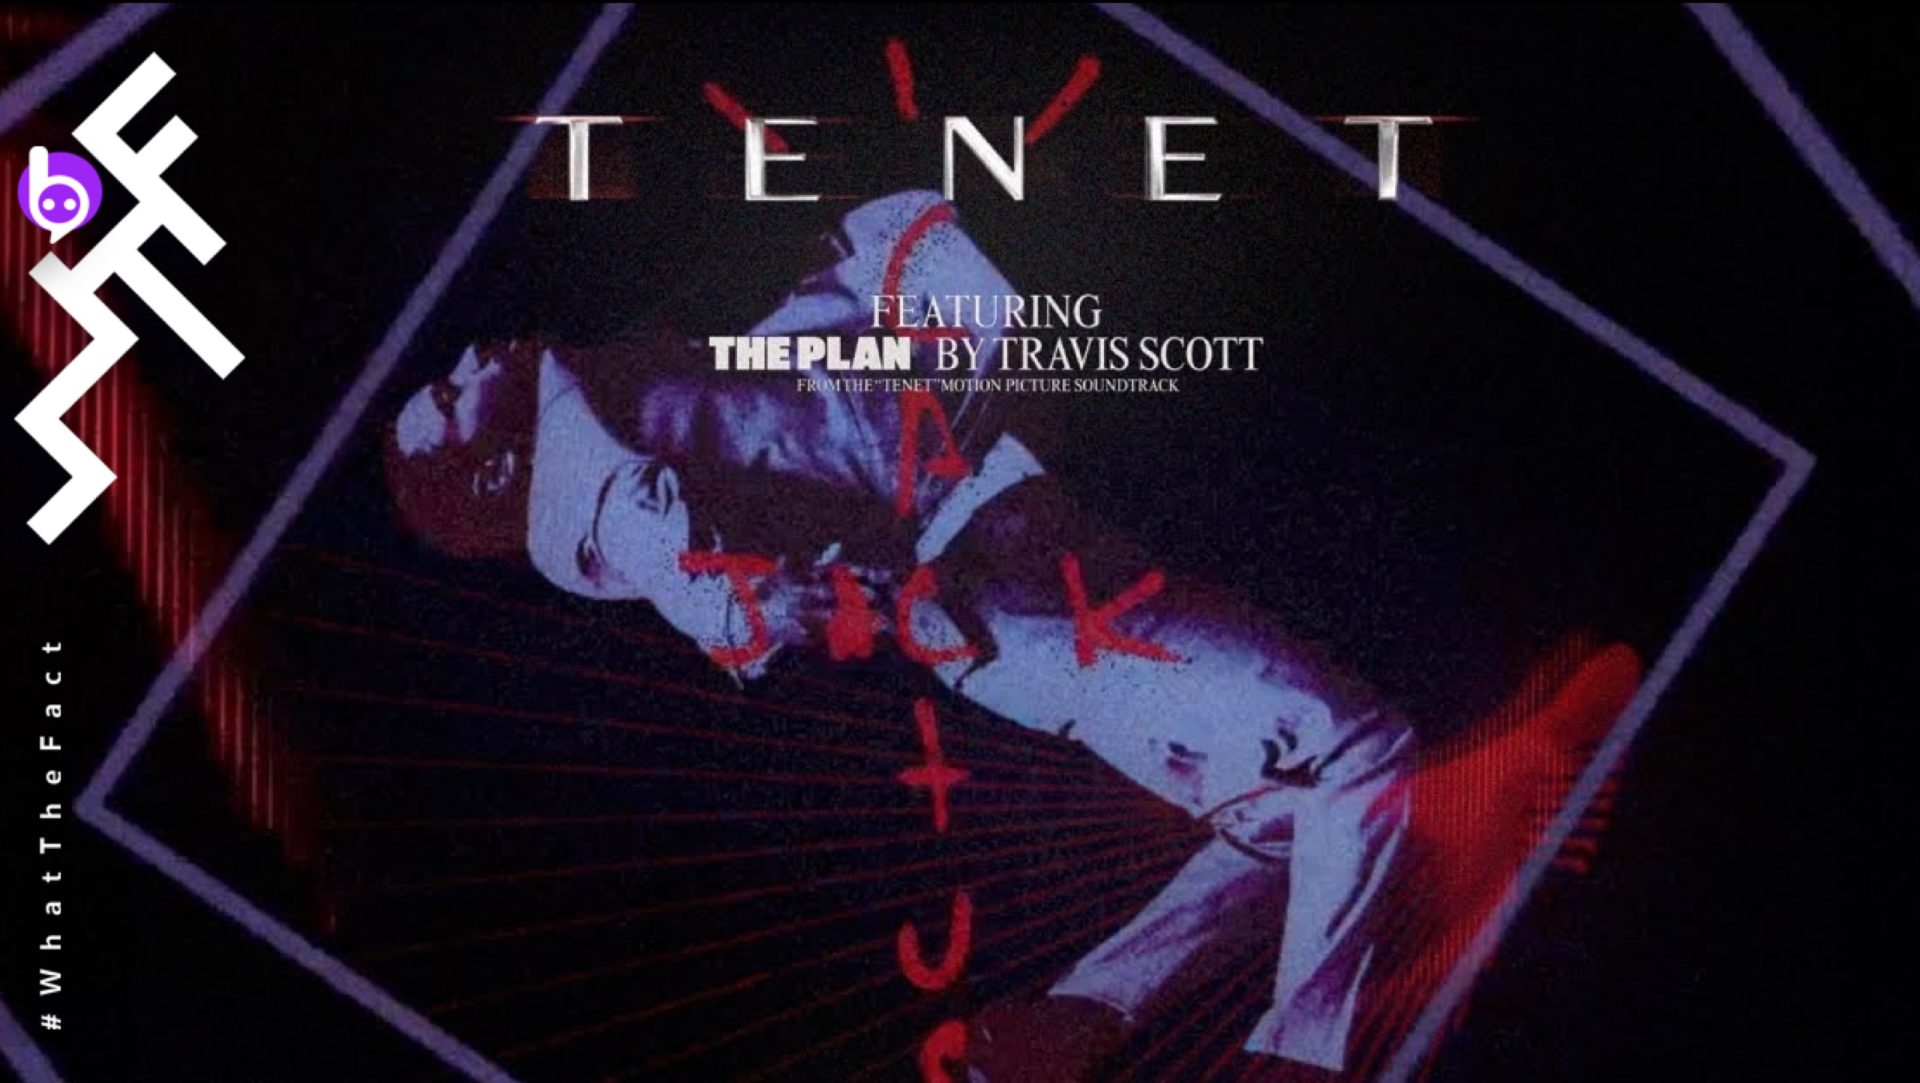 ทราวิส สก็อตต์ปล่อยบทเพลง ‘The Plan’ จิ๊กซอว์ชิ้นสุดท้ายในการดำดิ่งสู่โลกอันลึกล้ำของโนแลนใน ‘Tenet’